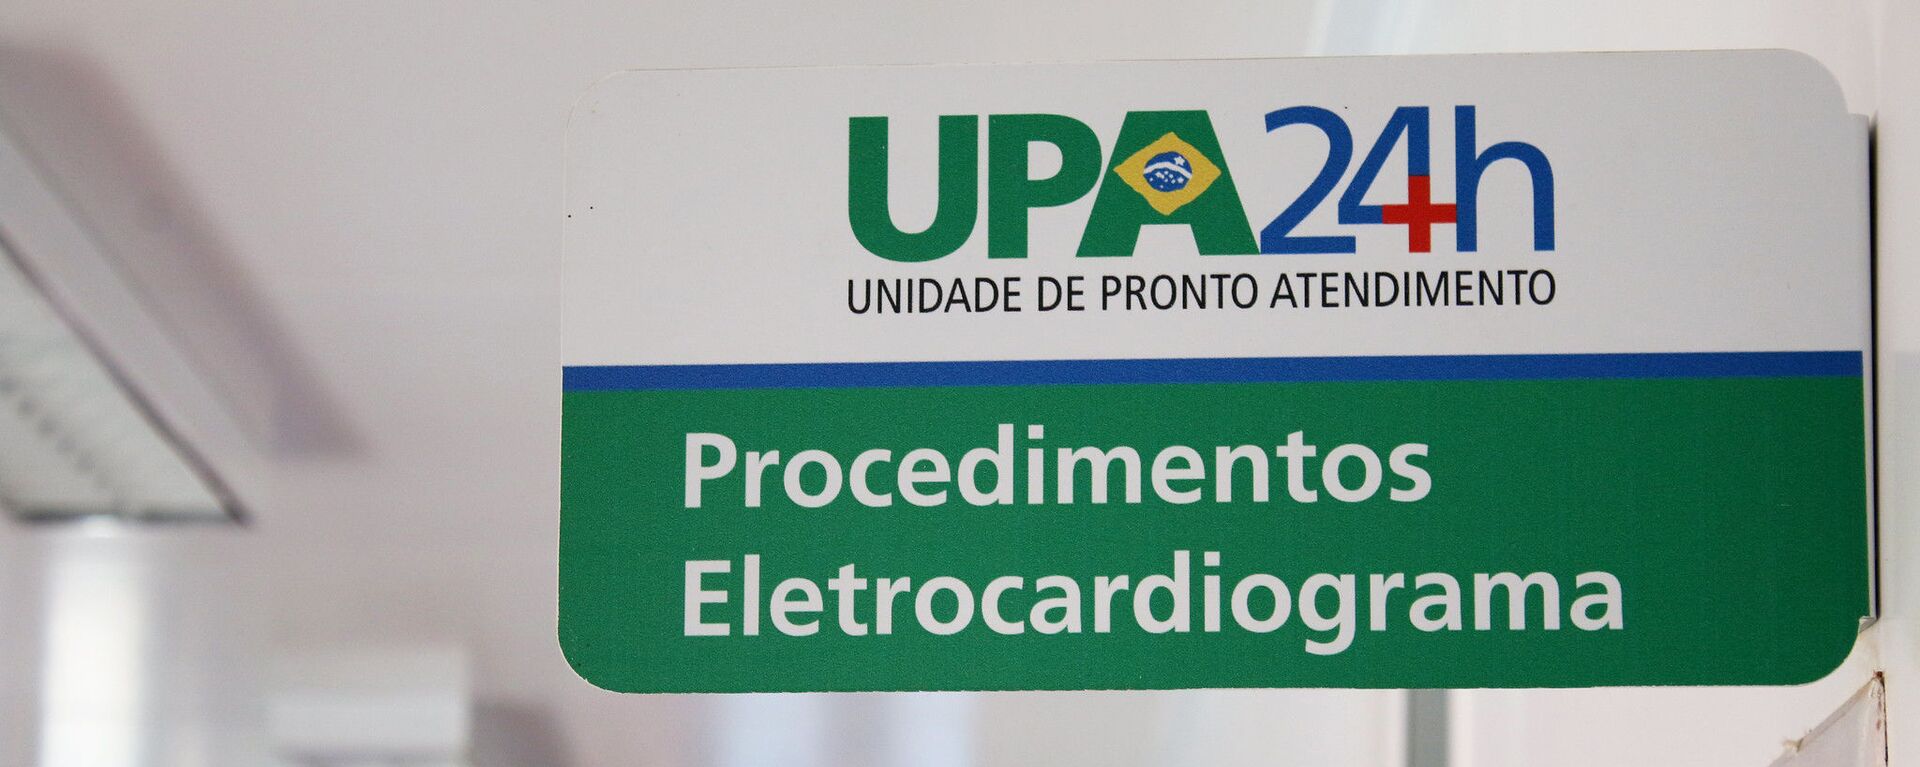 Unidade de Pronto Atendimento (UPA), do Sistema Único de Saúde (SUS), em Brasília (DF) - Sputnik Brasil, 1920, 27.09.2022